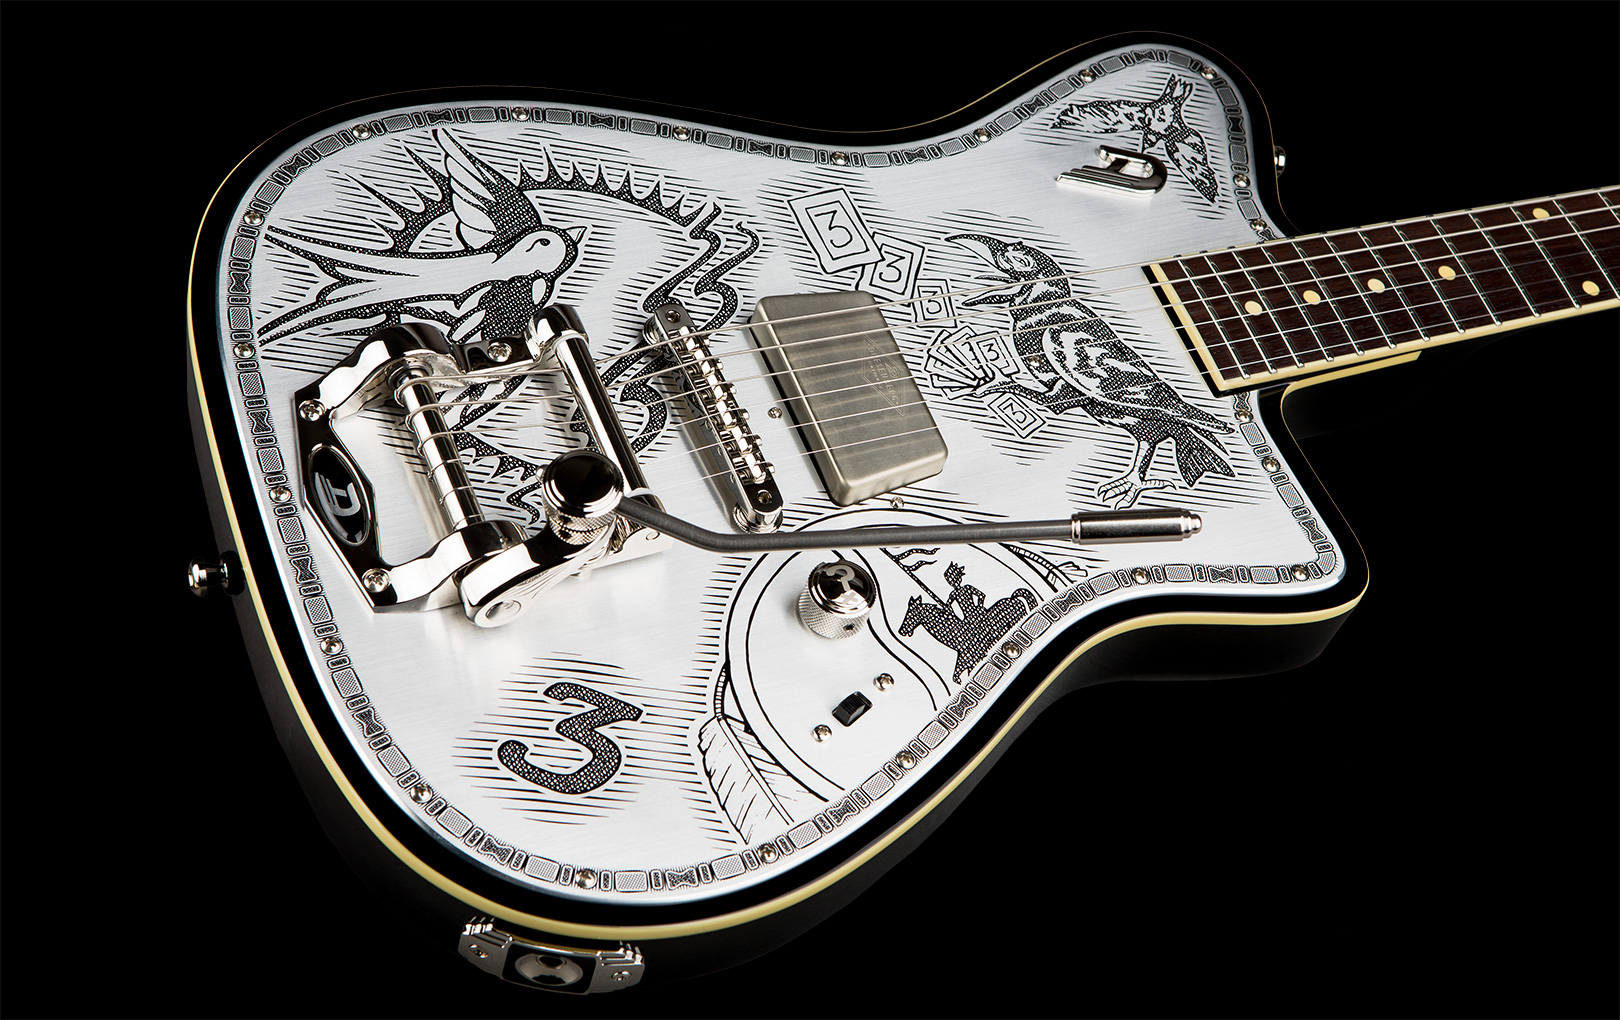 Duesenberg Johnny Depp Alliance S Trem Rw - Aluminium Plate - Signature electric guitar - Variation 1